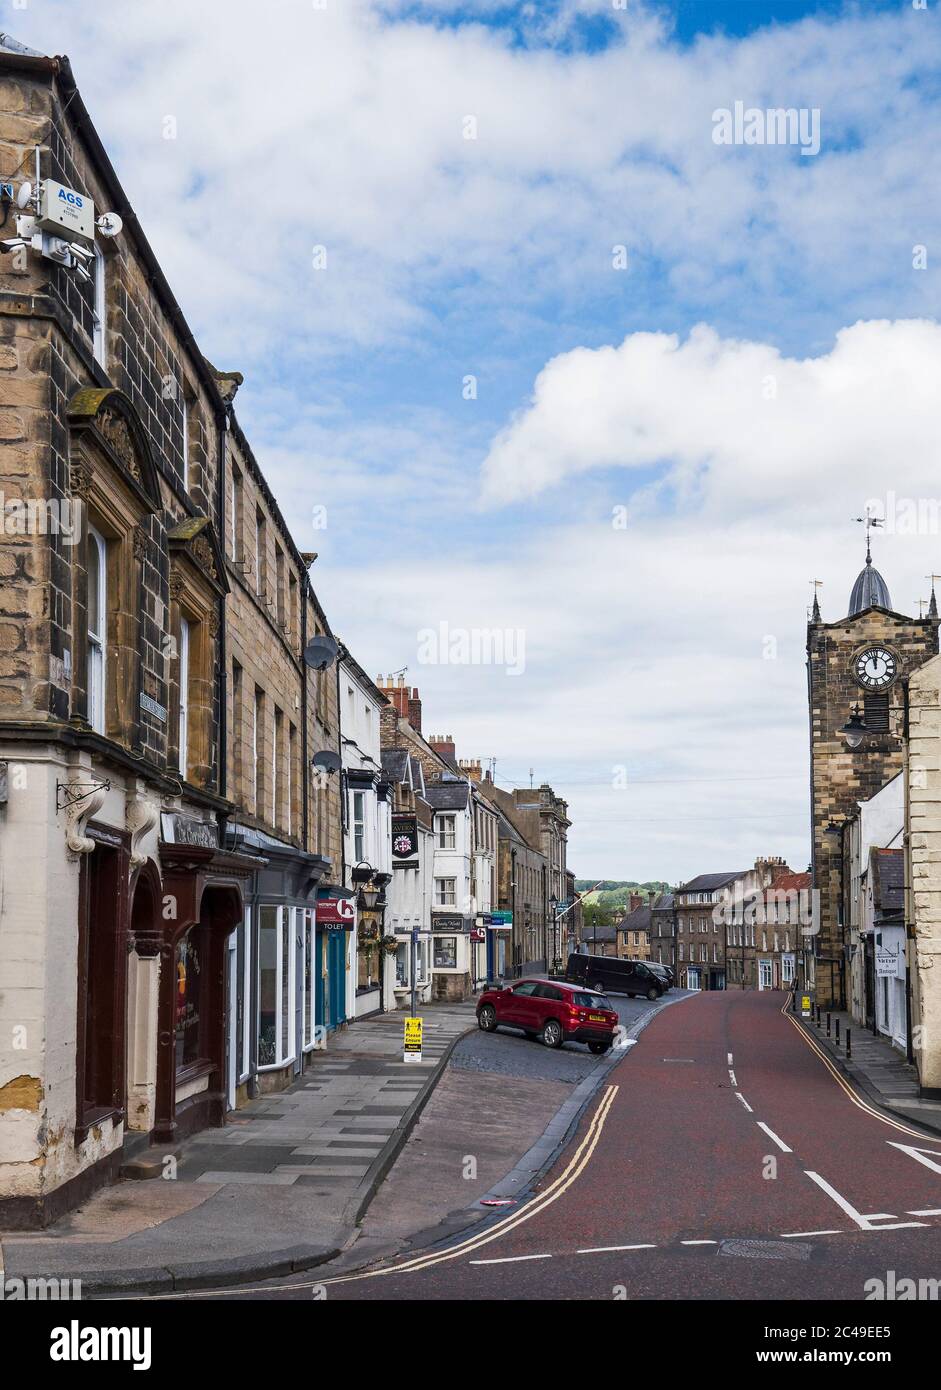 Ruhige Straßen einer normalerweise lebhaften Marktstadt, Alnwick, Northumberland, Großbritannien und ein 2 m soziales Distanzierungszeichen während der Coronavirus-Pandemie von 2020. Stockfoto